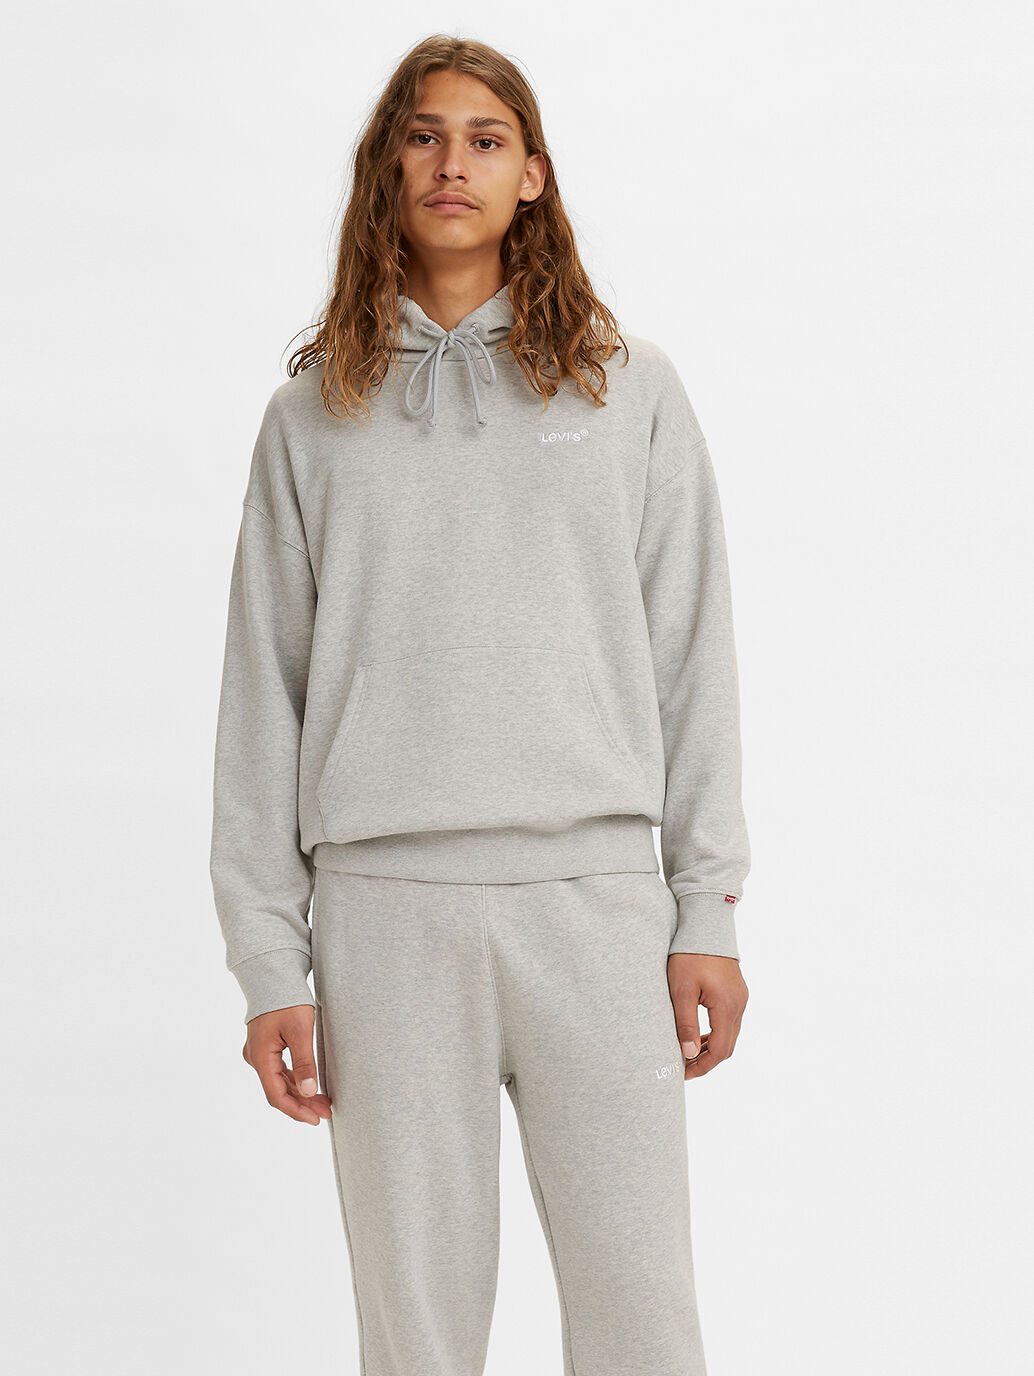 grey levis hoodie women's